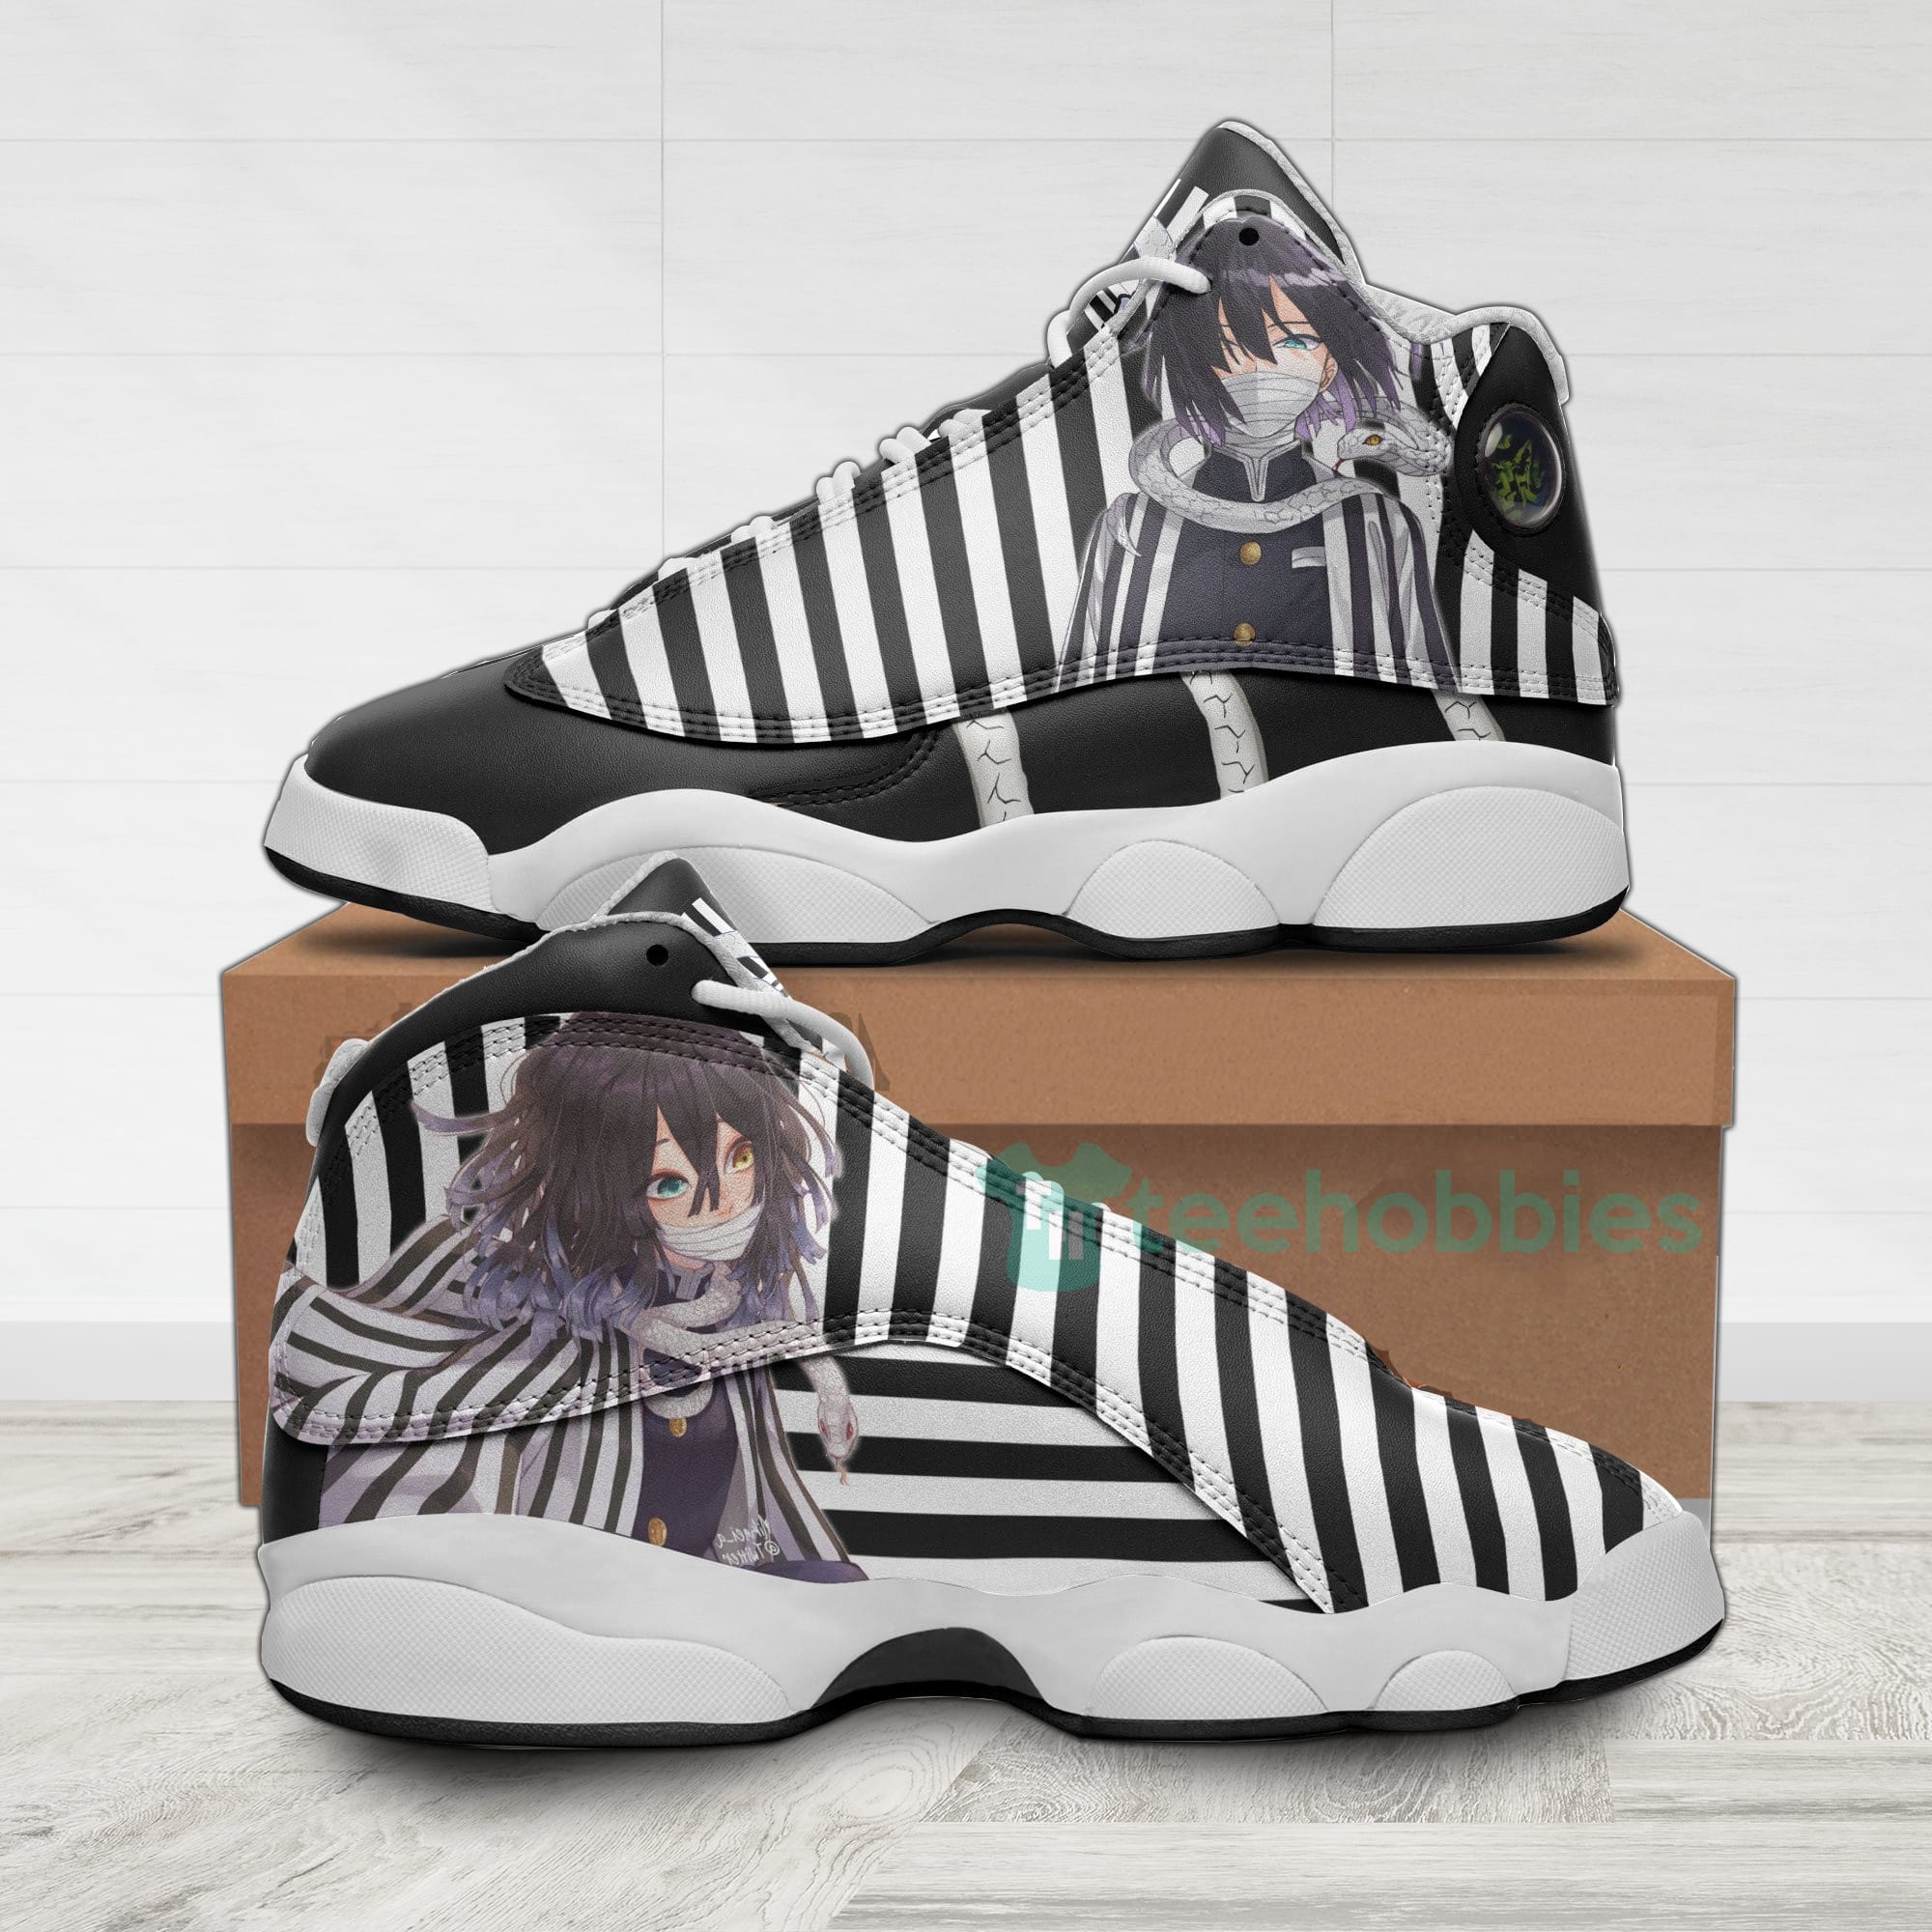 Obanai Iguro Custom KNY Anime Air Jordan 13 Shoes